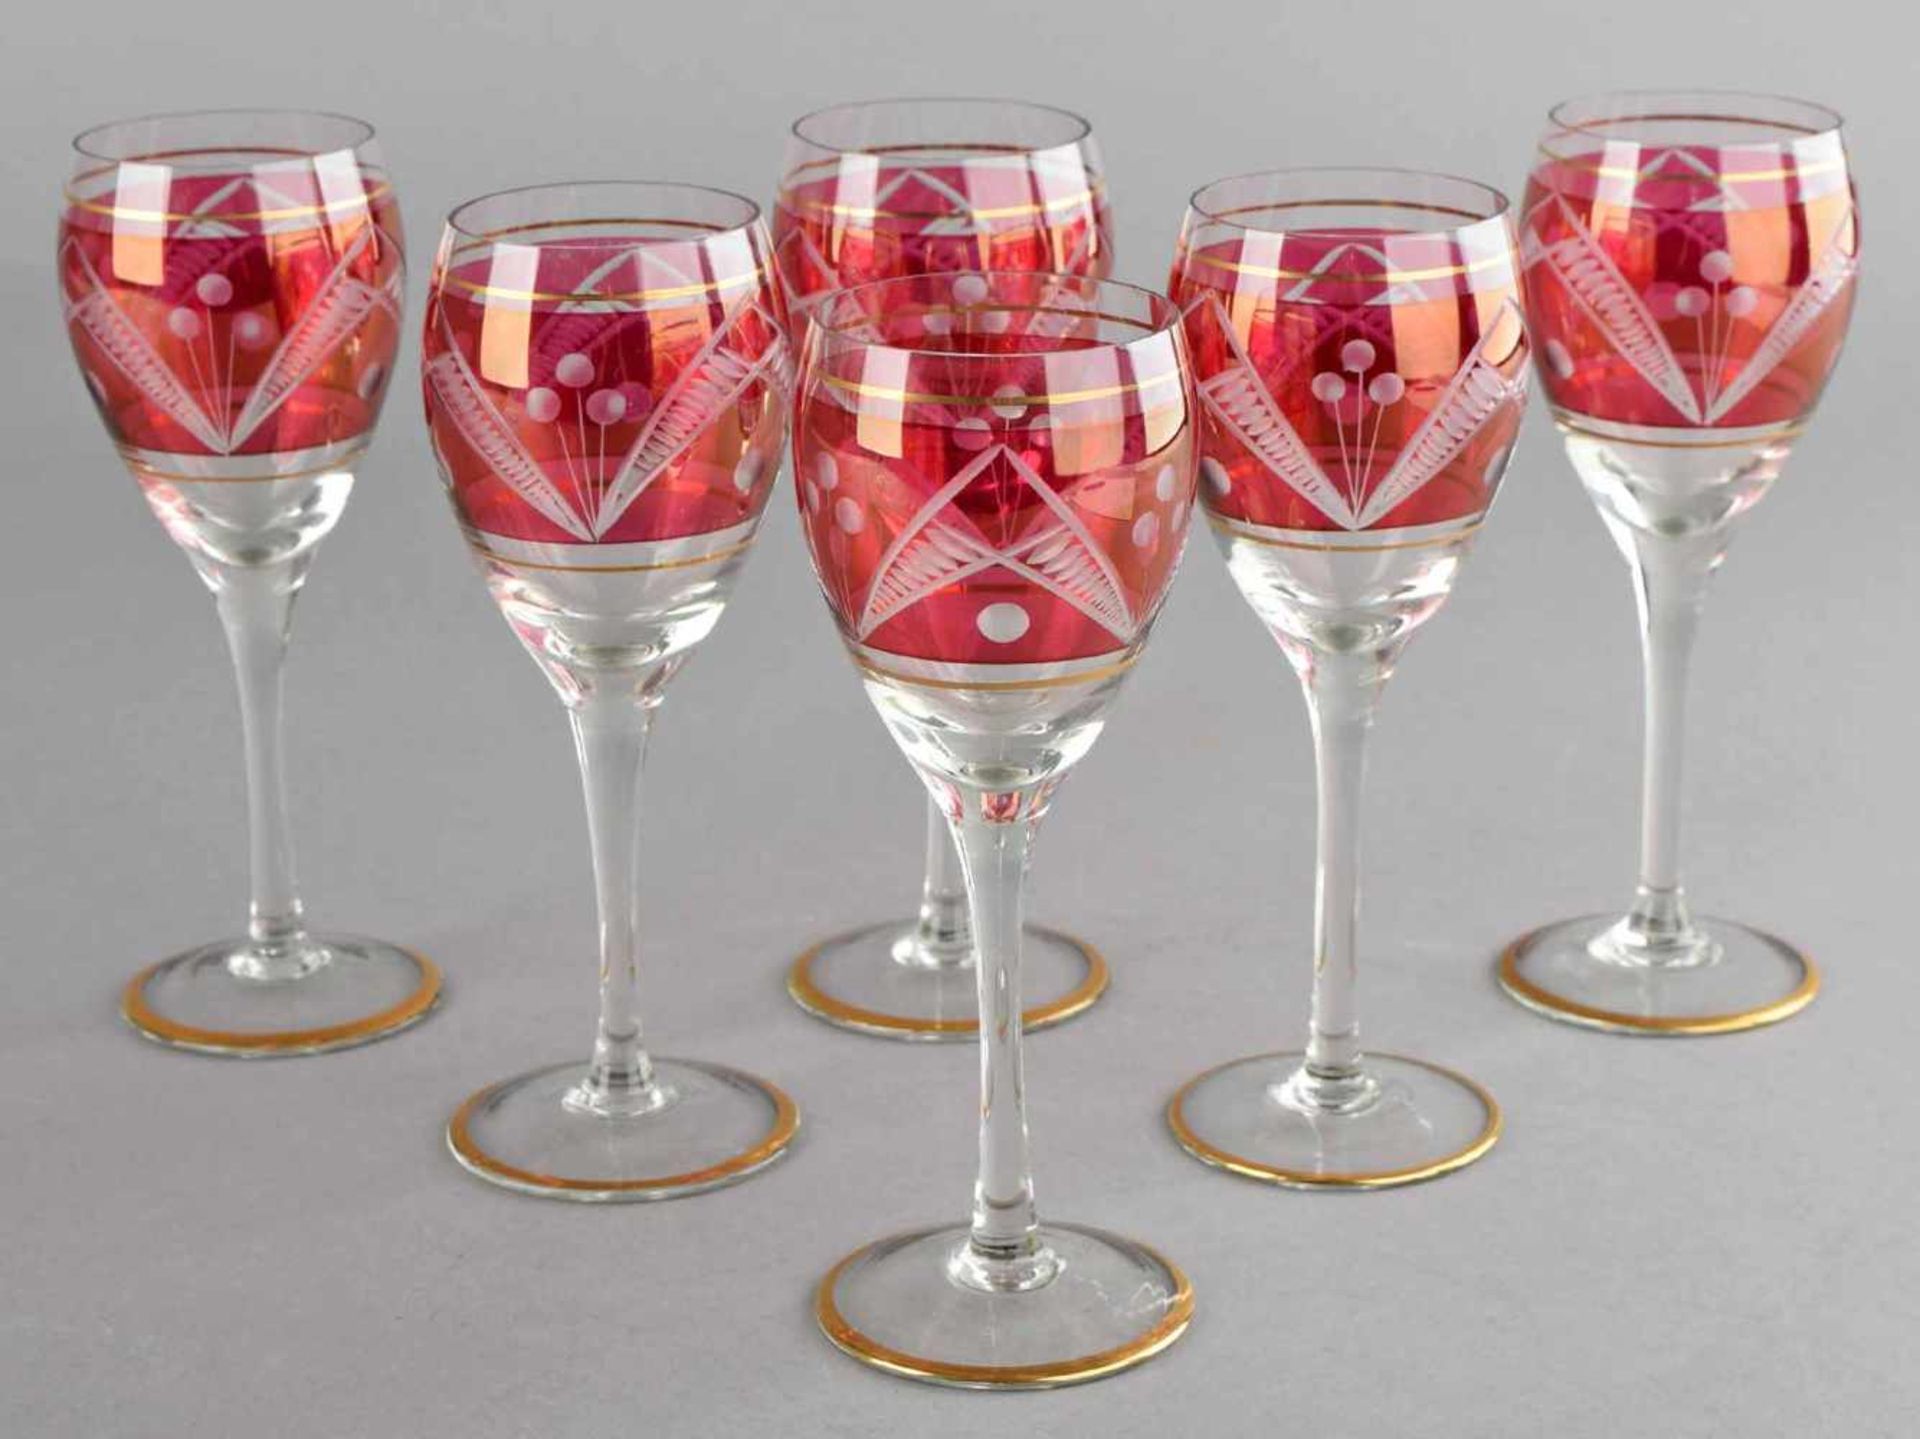 Sechs Weingläser farbloses Glas partiell himbeerrot gebeizt, Scheibenfuß mit leicht tailliertem - Bild 2 aus 2